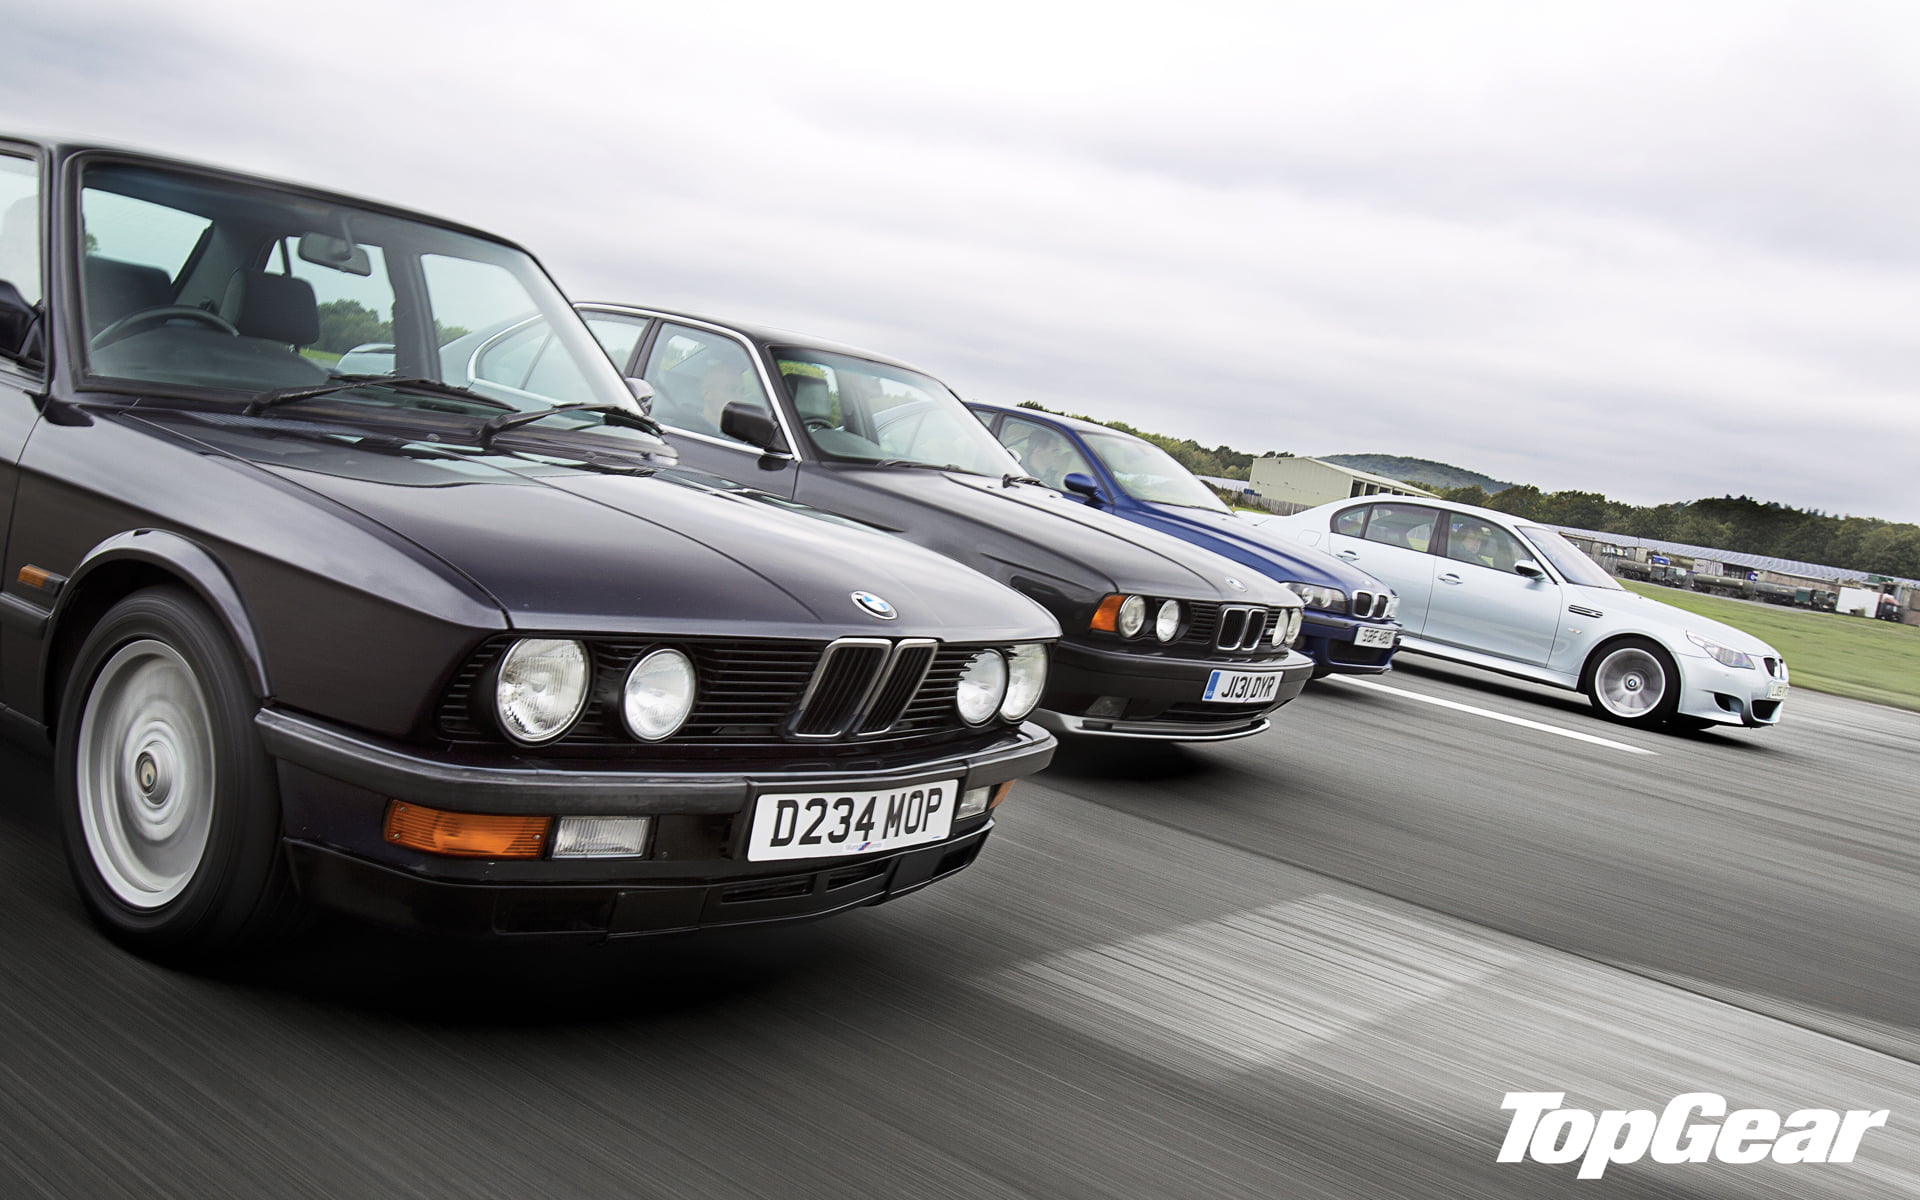 black BMW car, classic, top gear, E34, E39, E60, the best TV show and magazine